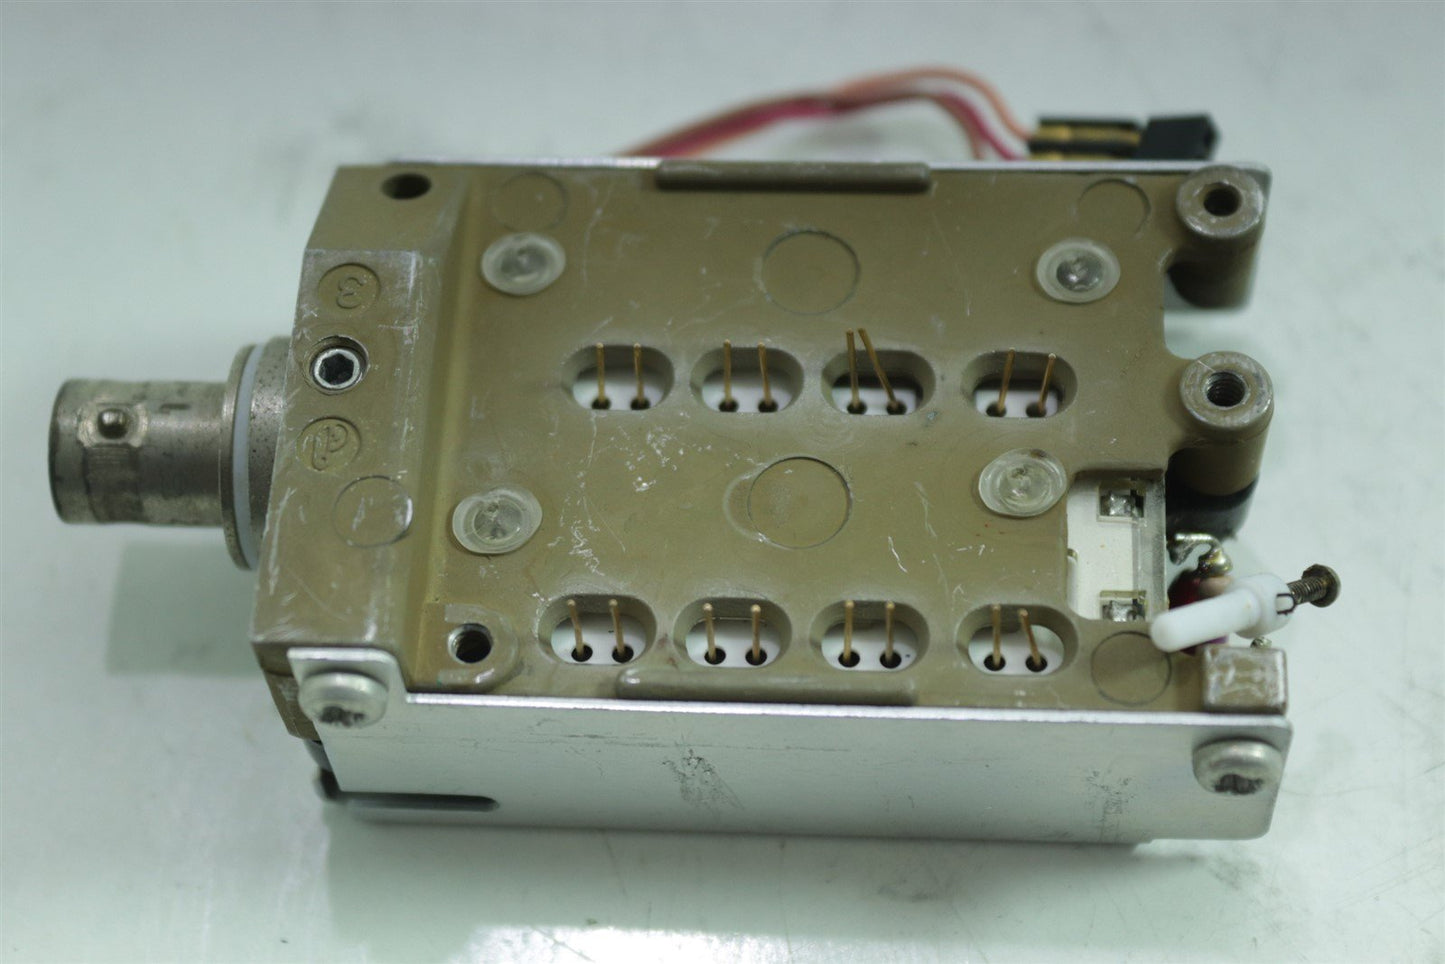 Tektronix Oscilloscope Digital Attenuator input amplifier 119-1445-01 300MHz BNC